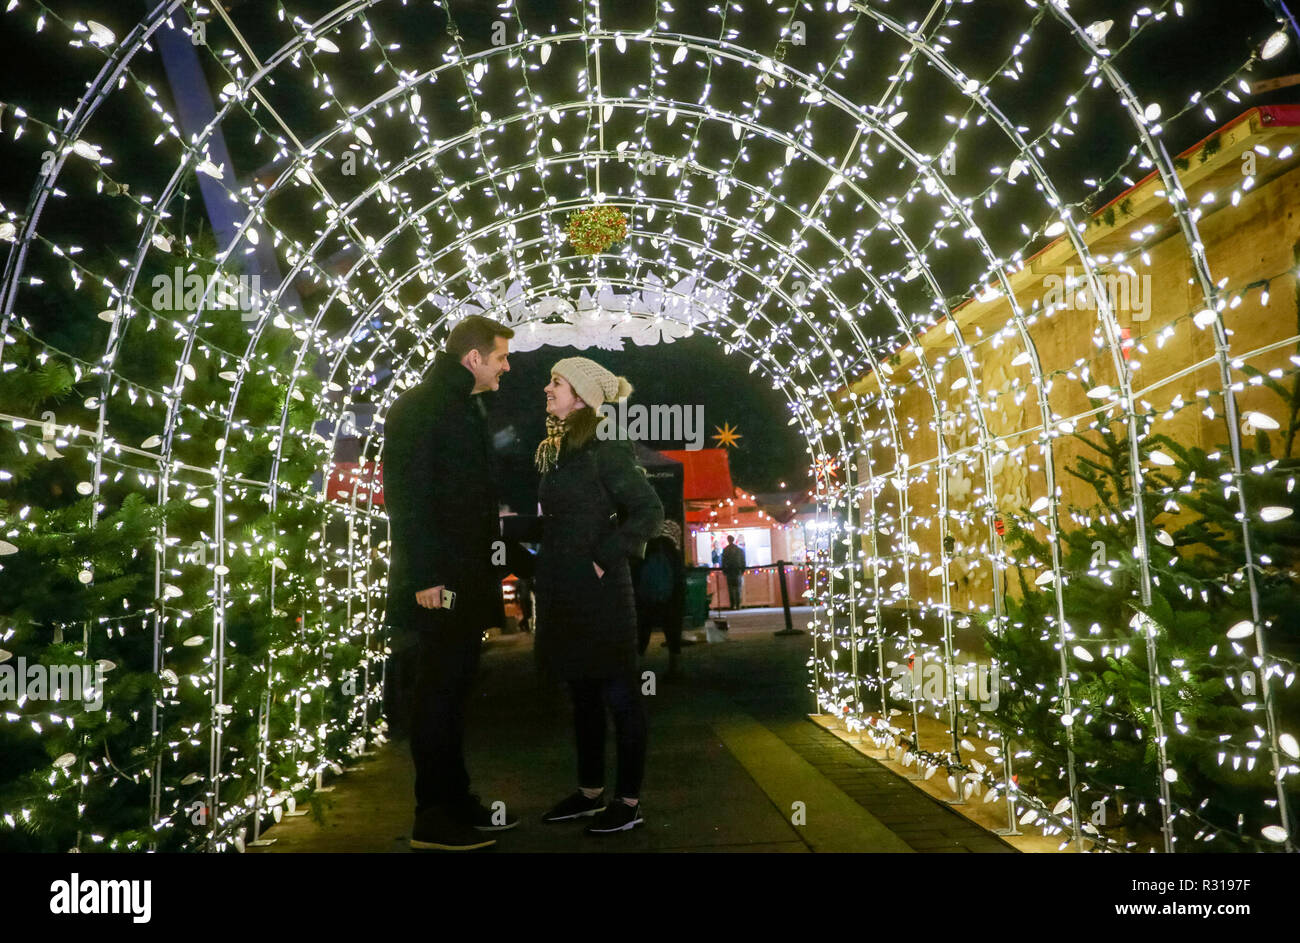 Vancouver, Canadá. 20 Nov, 2018. Los turistas pagan una visita en el mercado de Navidad en Vancouver, Canadá, el 20 de noviembre, 2018. Crédito: Liang Sen/Xinhua/Alamy Live News Foto de stock